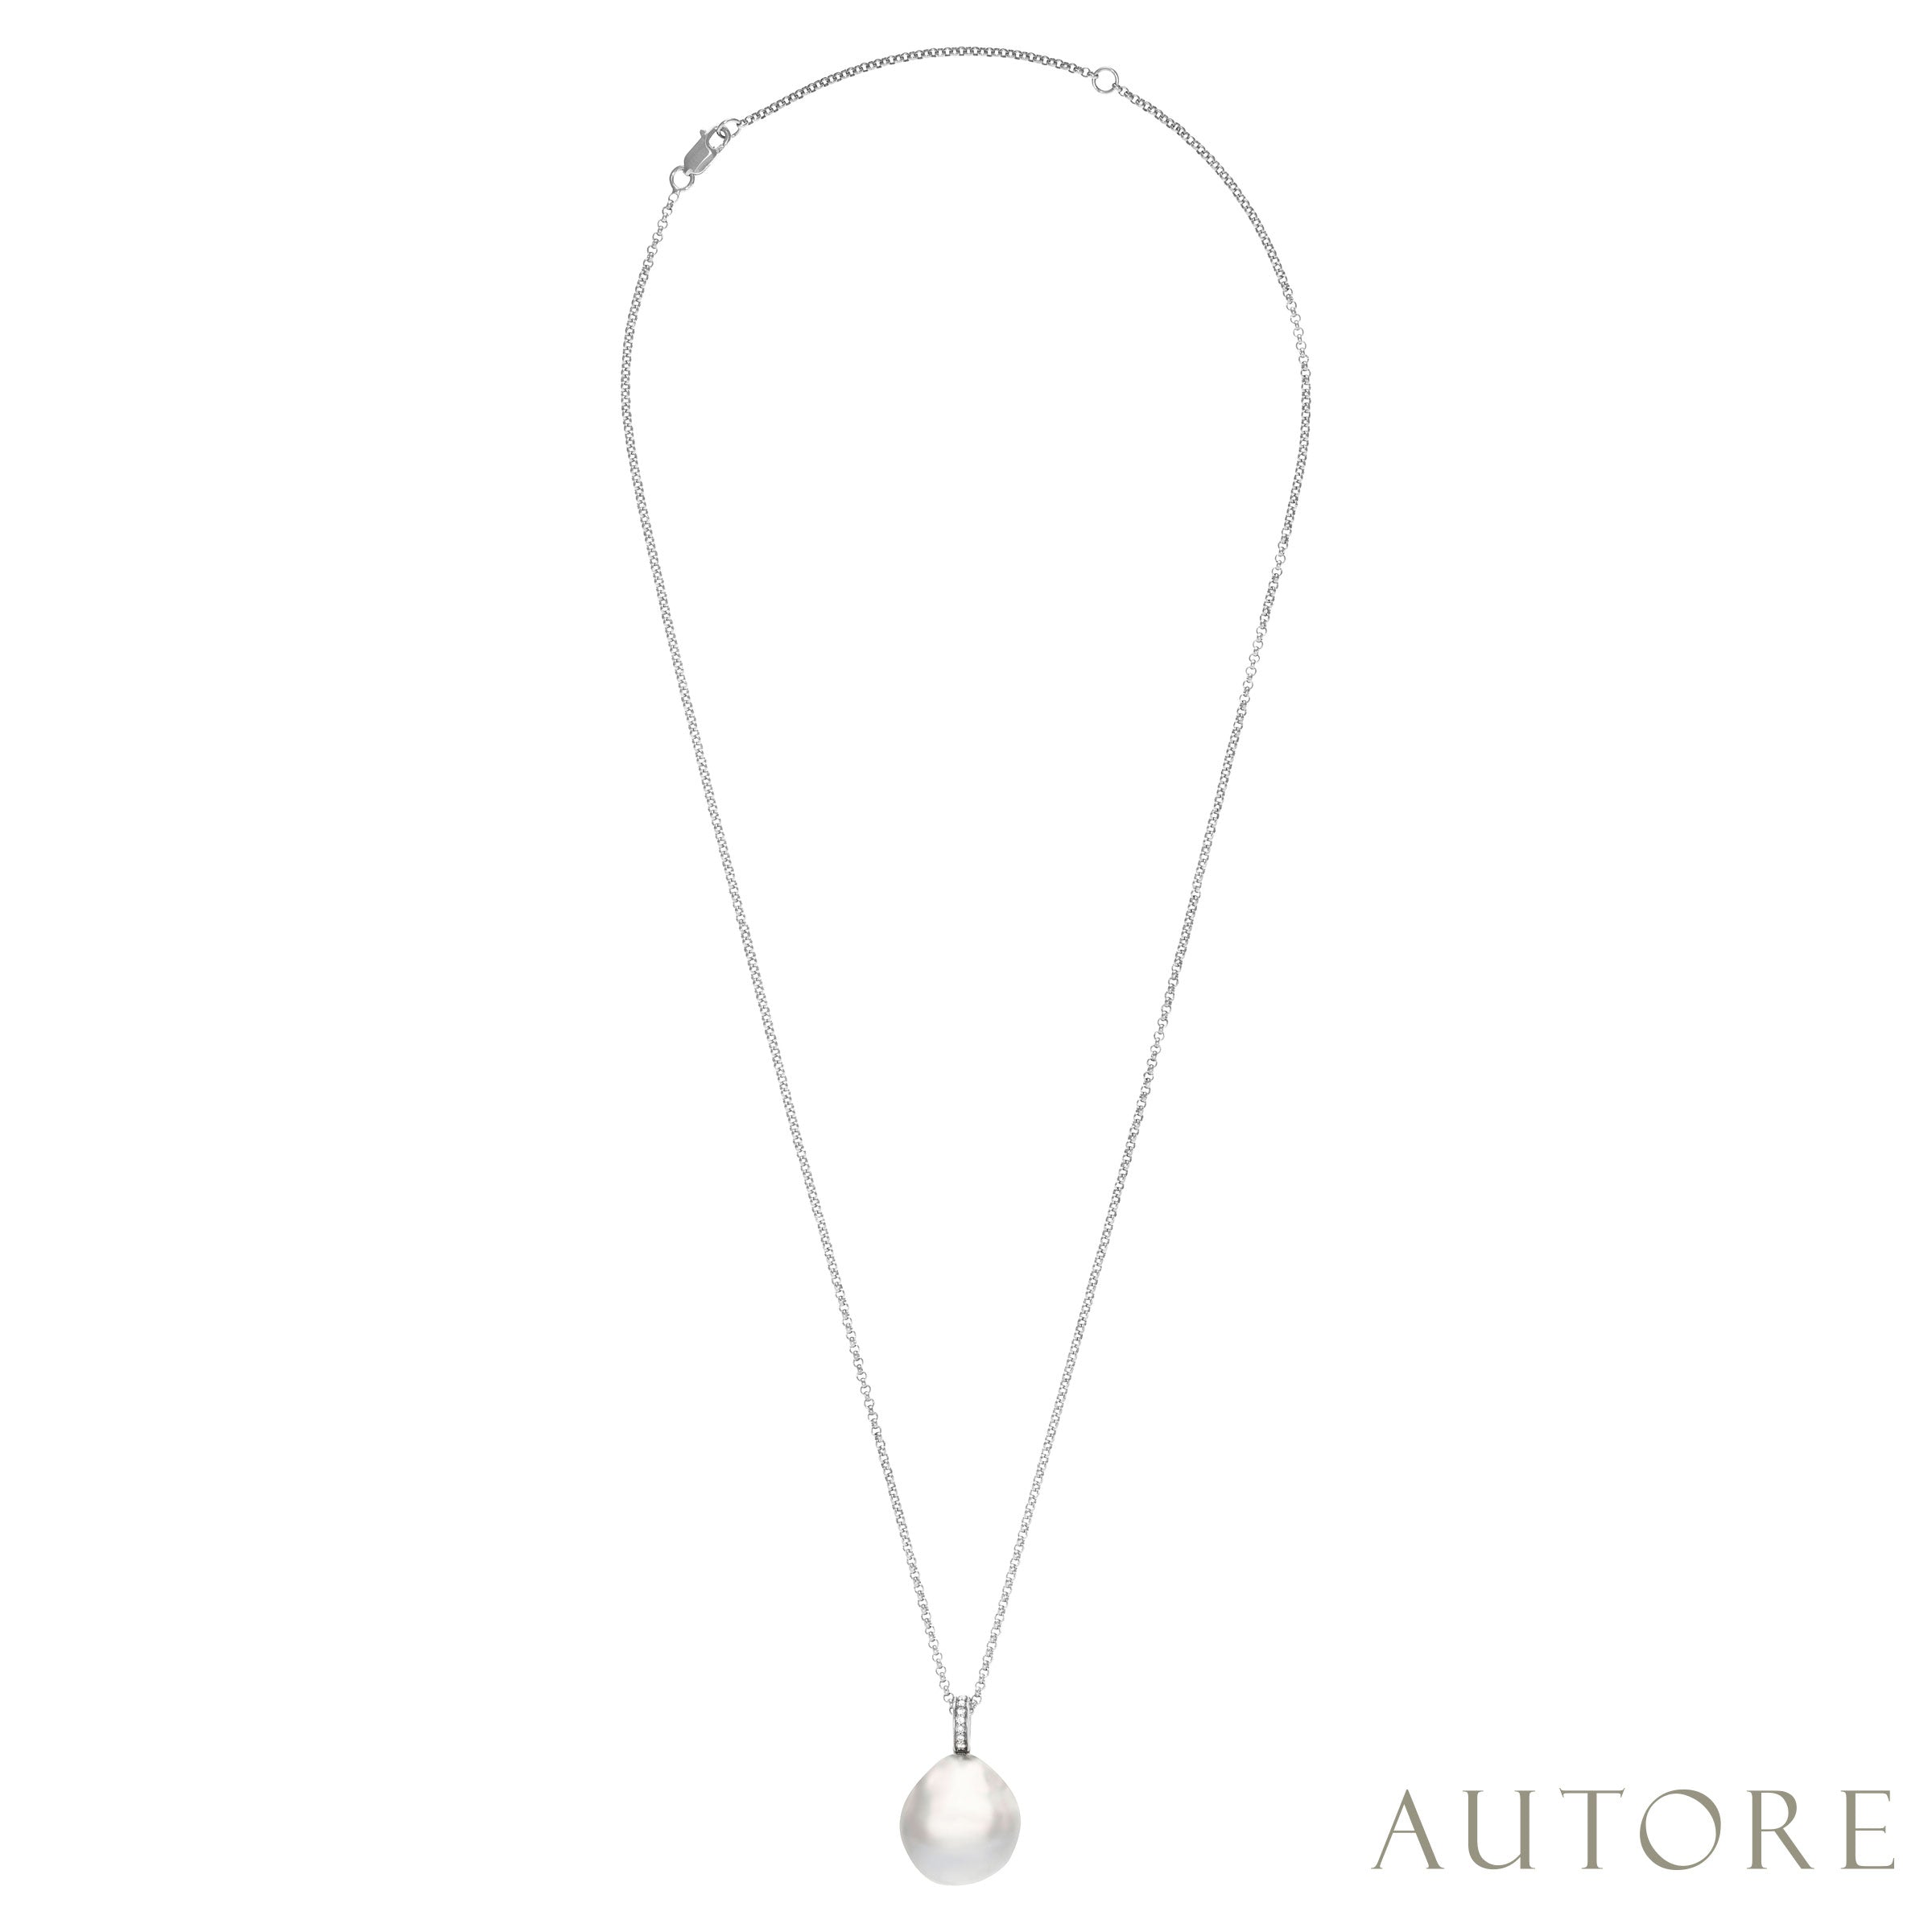 AUTORE 15mm South Sea baroque pearl and diamond pendant